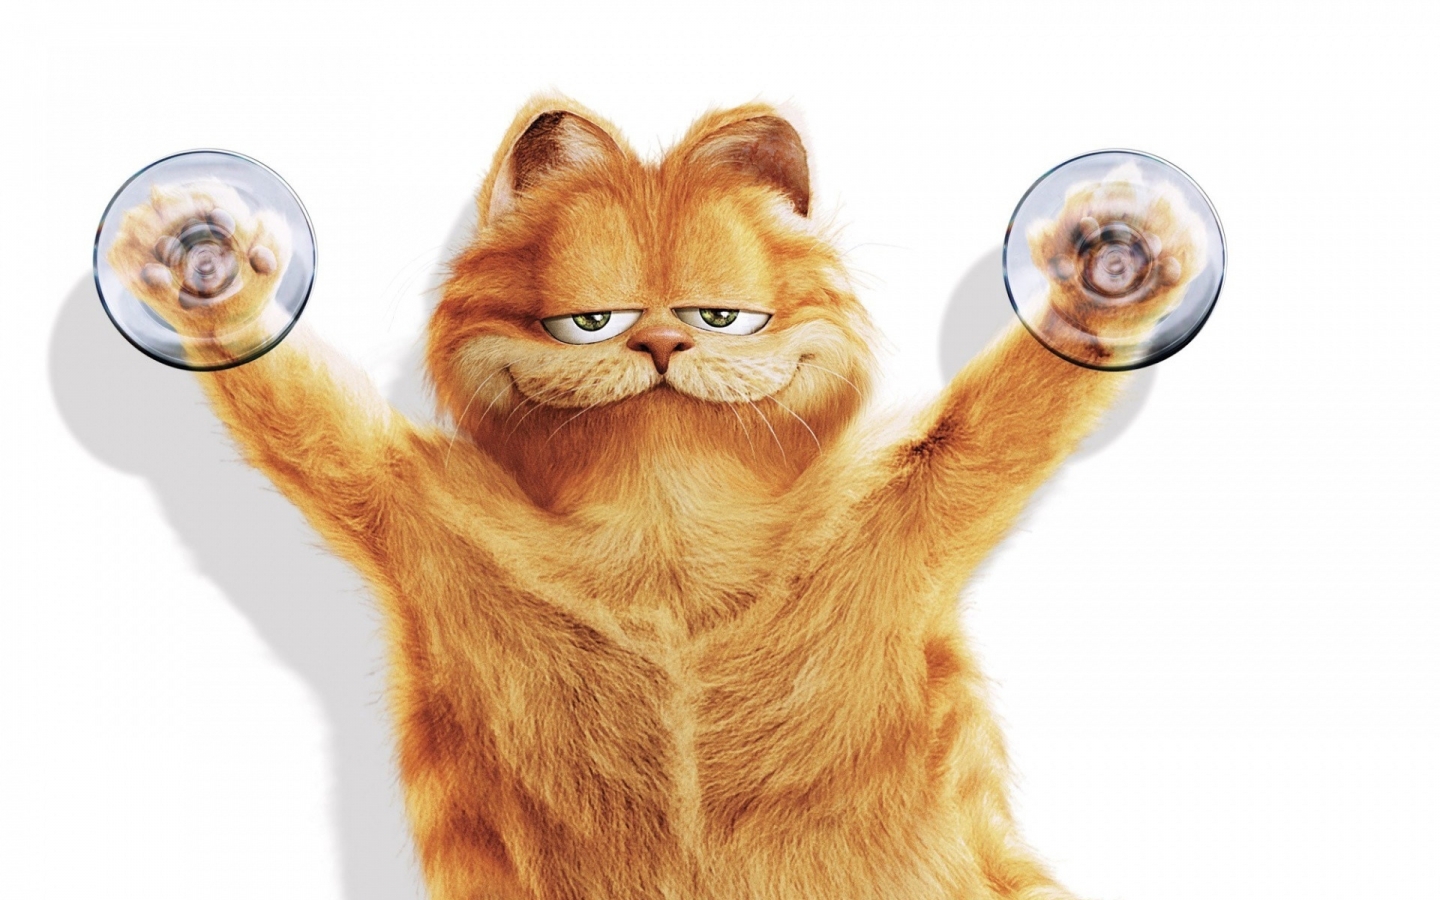 Garfield for 1440 x 900 widescreen resolution